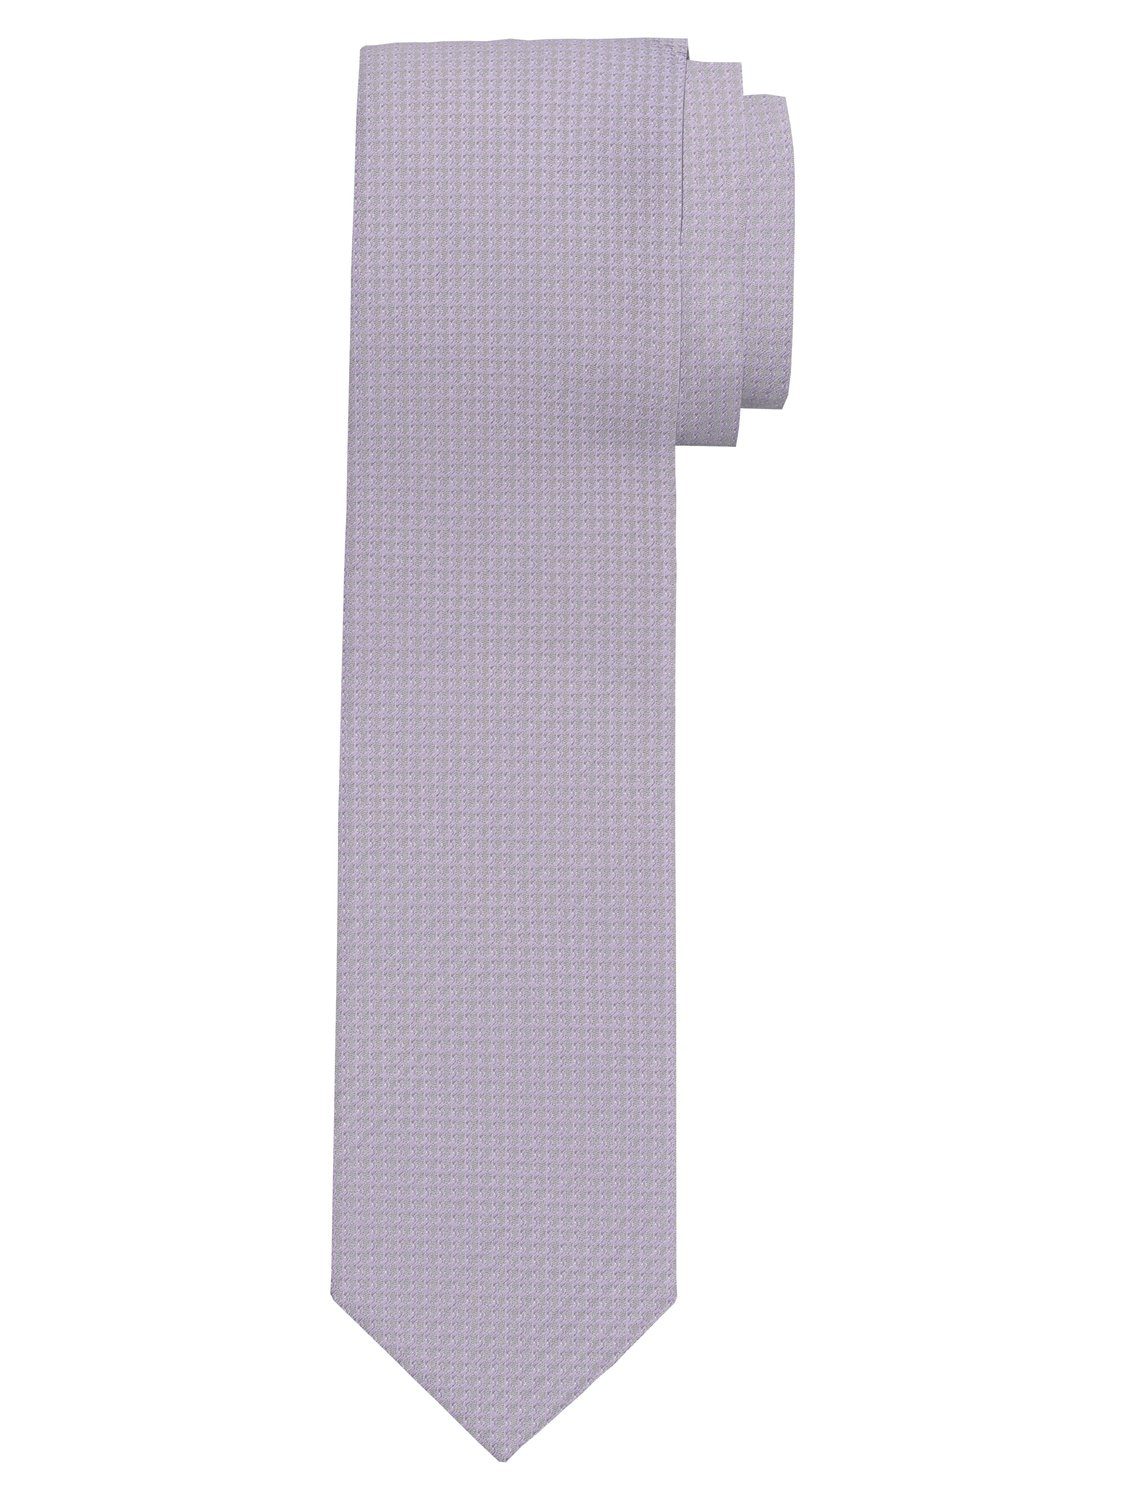 OLYMP Krawatte 1782/00 Krawatten flieder